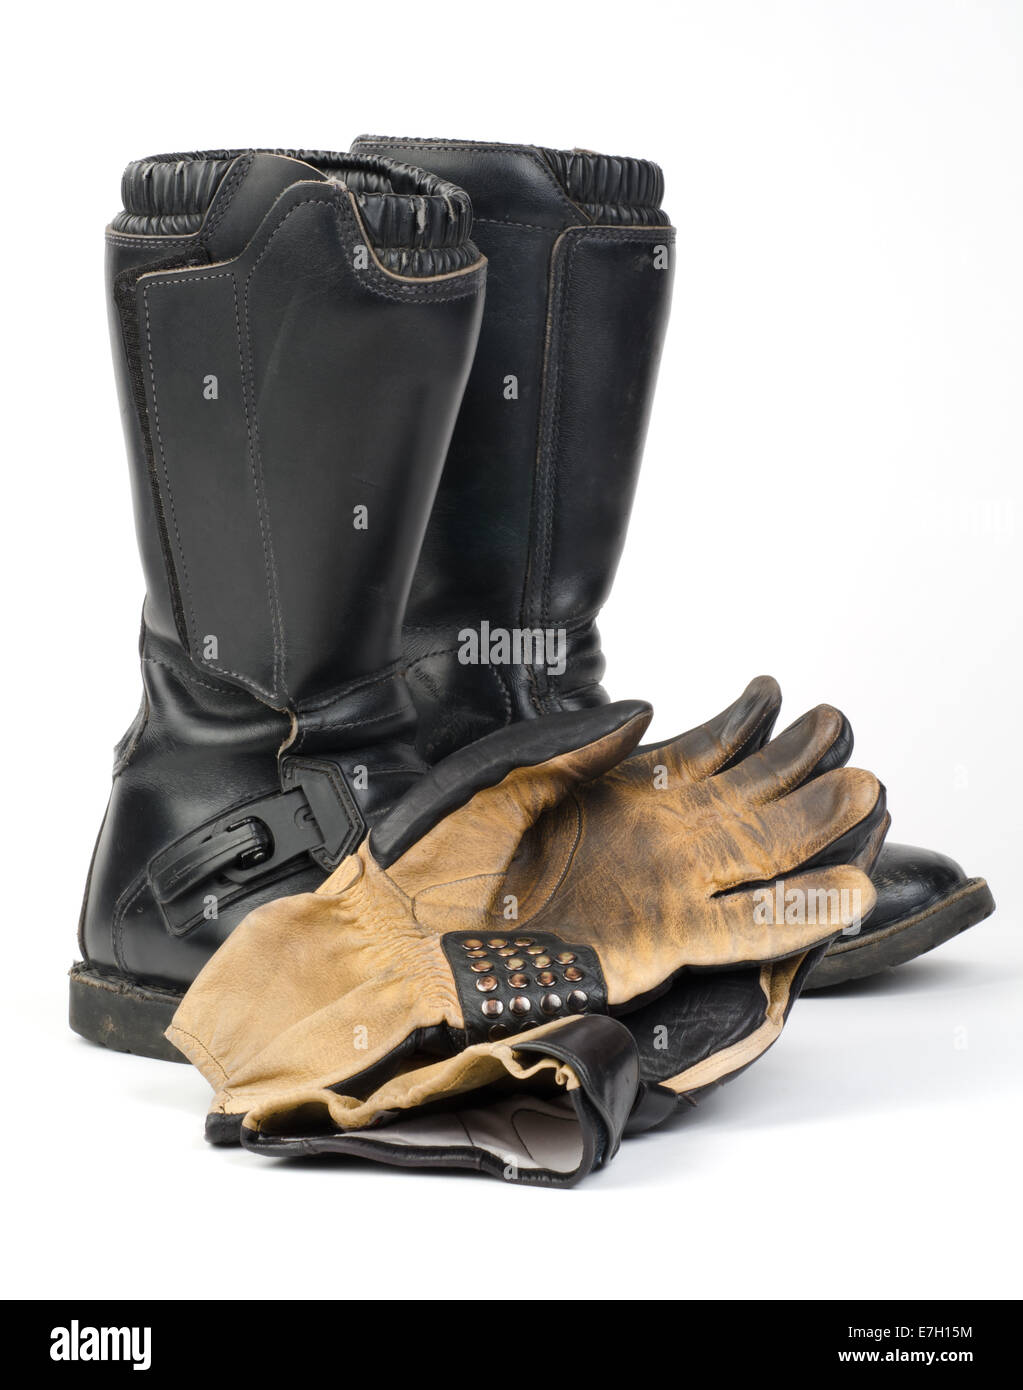 Bottes moto noir et porté des gants. Banque D'Images